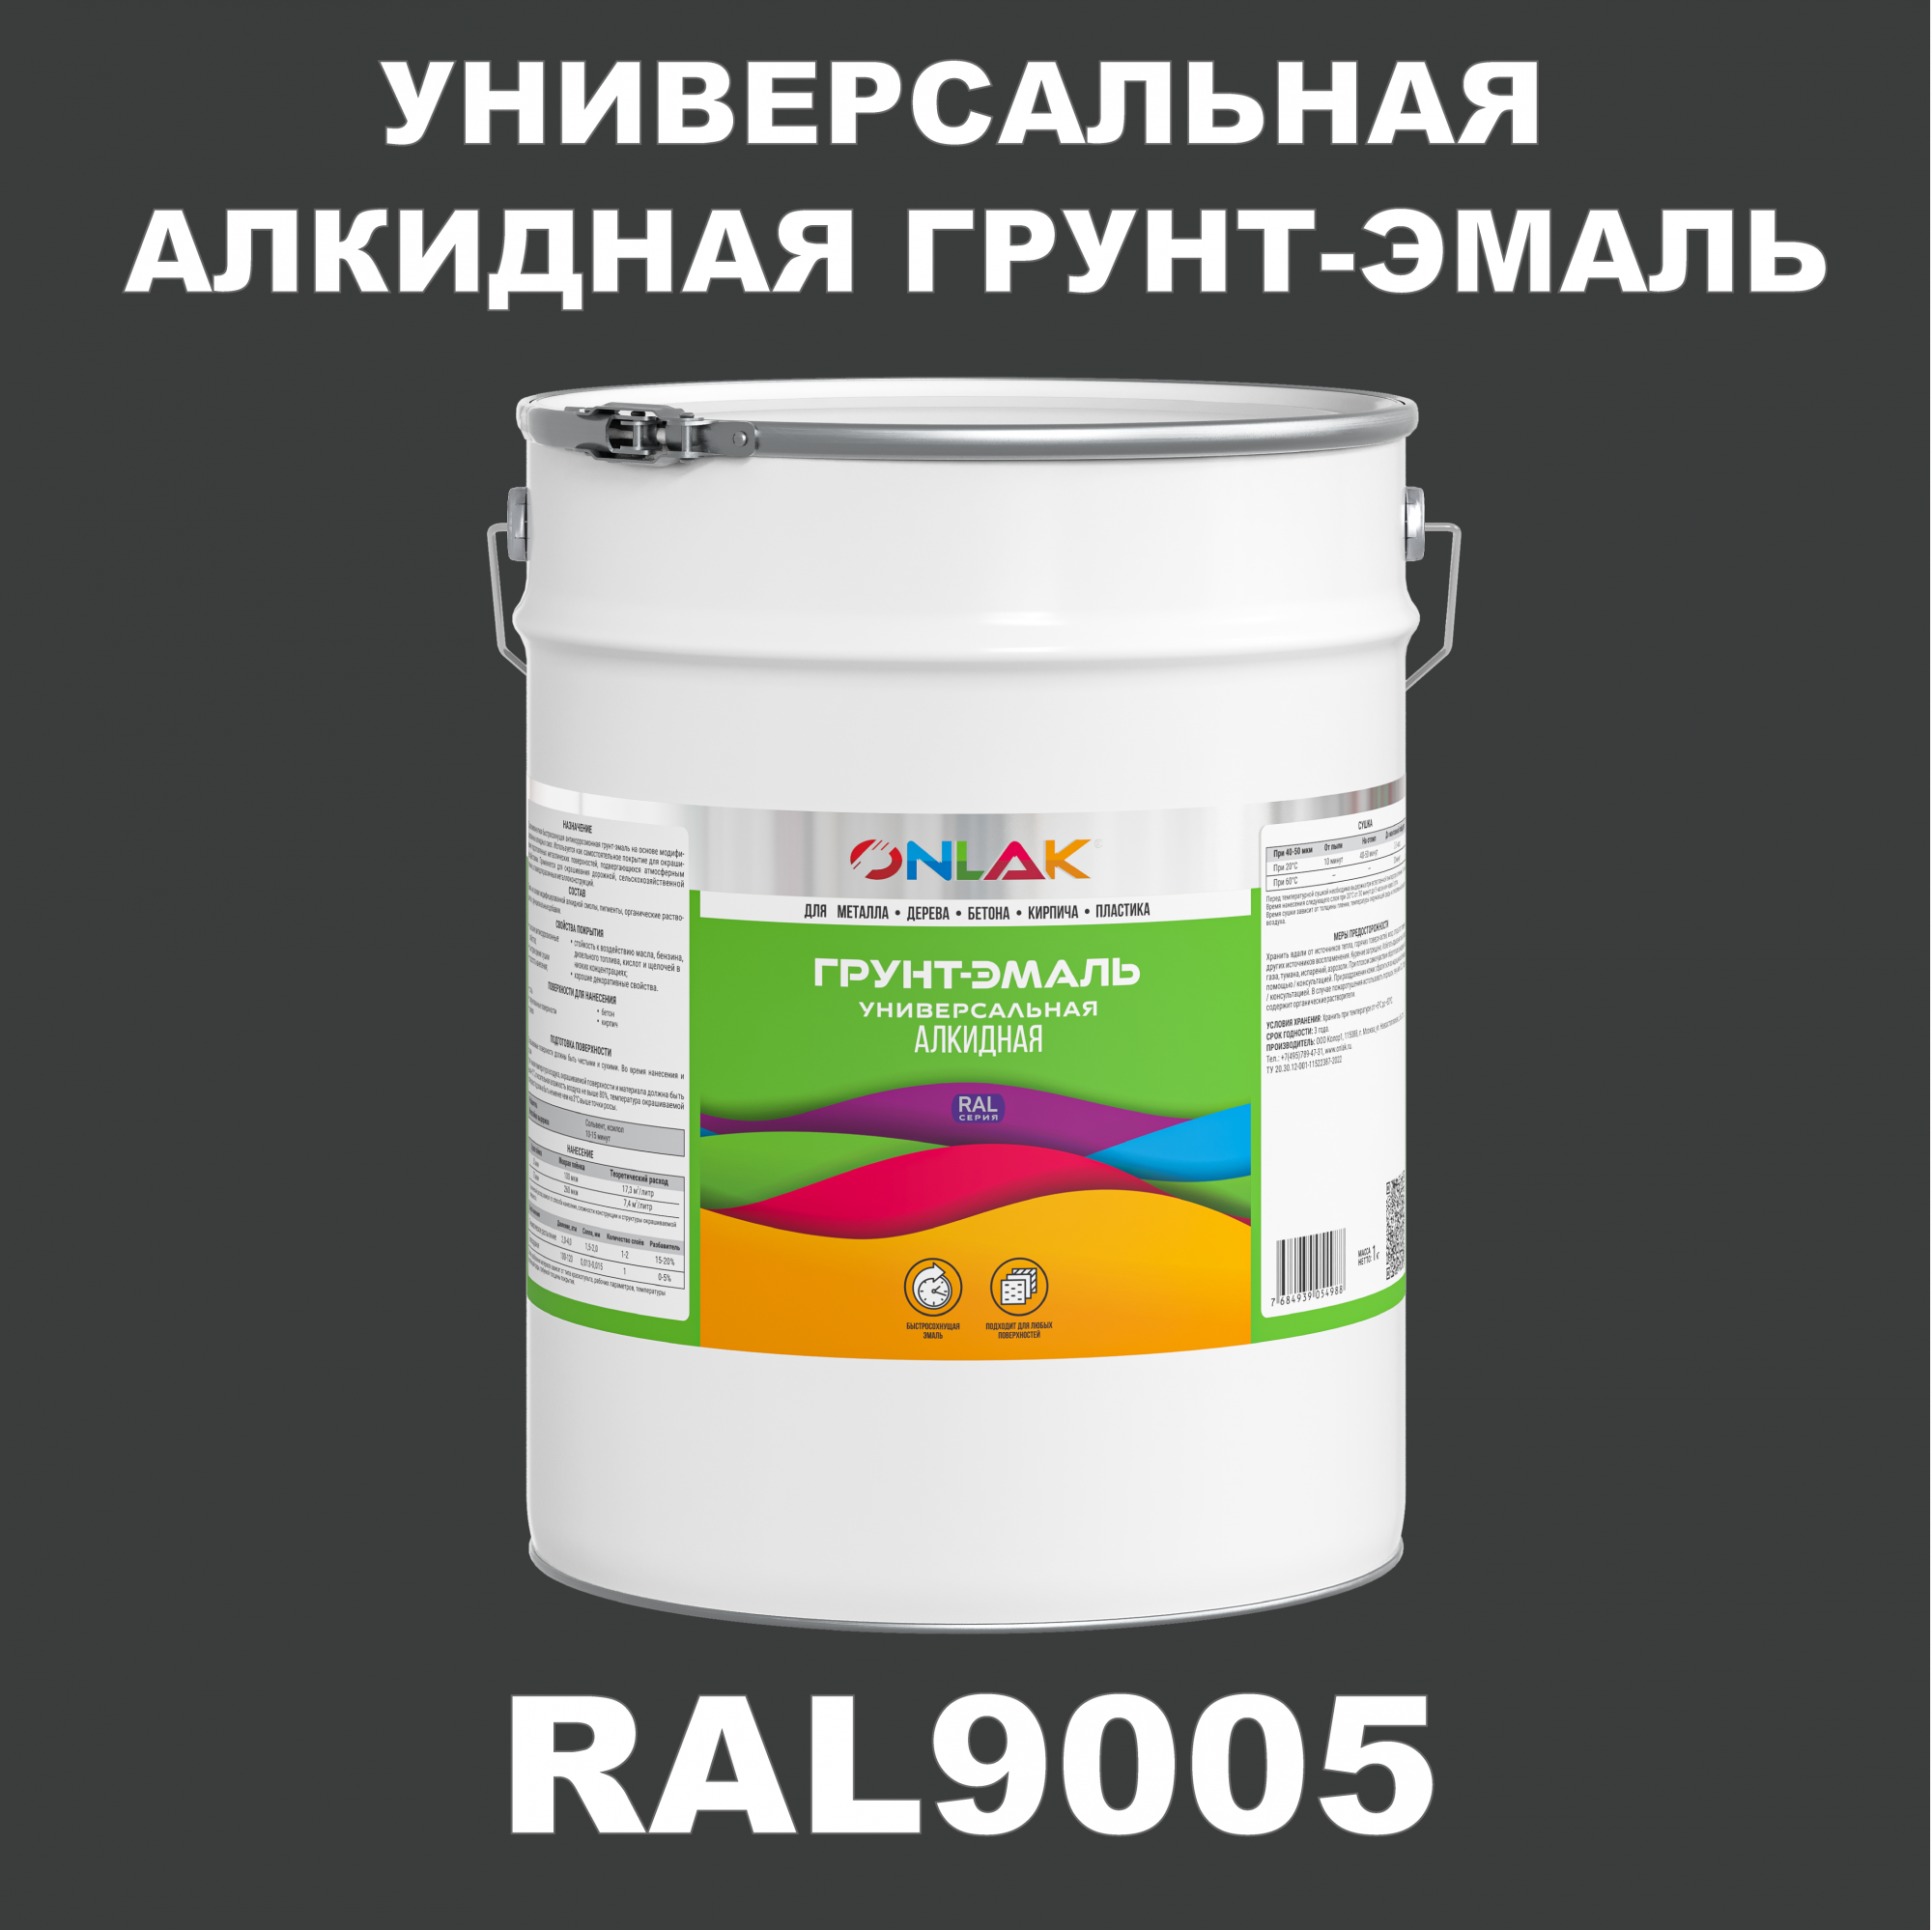 Грунт-эмаль ONLAK 1К RAL9005 антикоррозионная алкидная по металлу по ржавчине 20 кг грунт эмаль yollo по ржавчине алкидная синяя 0 9 кг